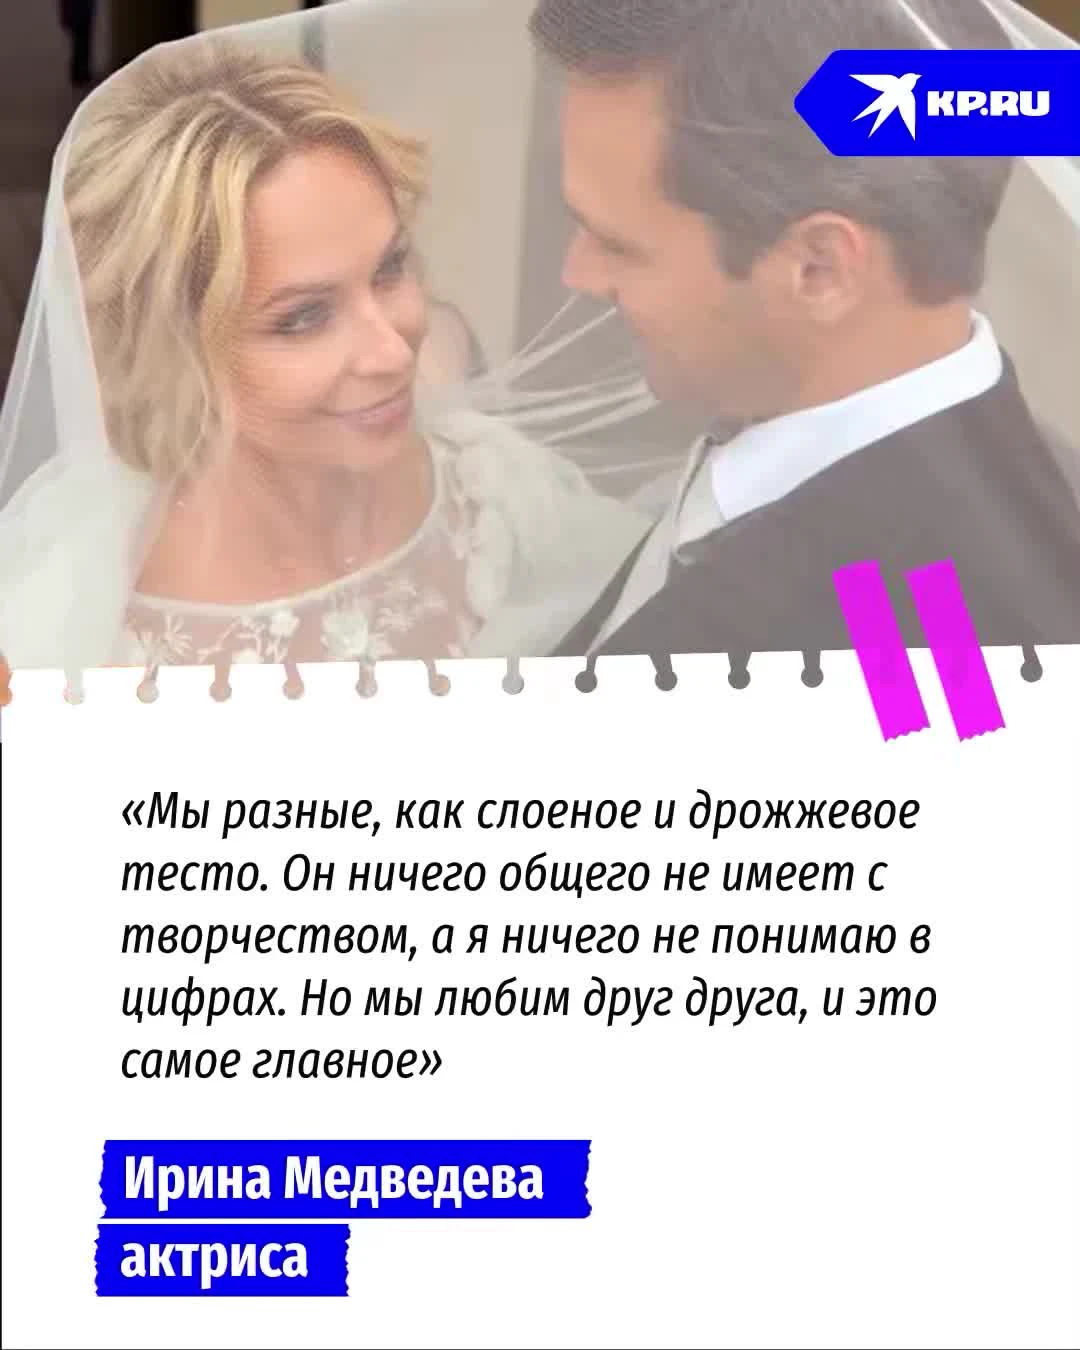 Ирина Медведева - биография, новости, личная жизнь